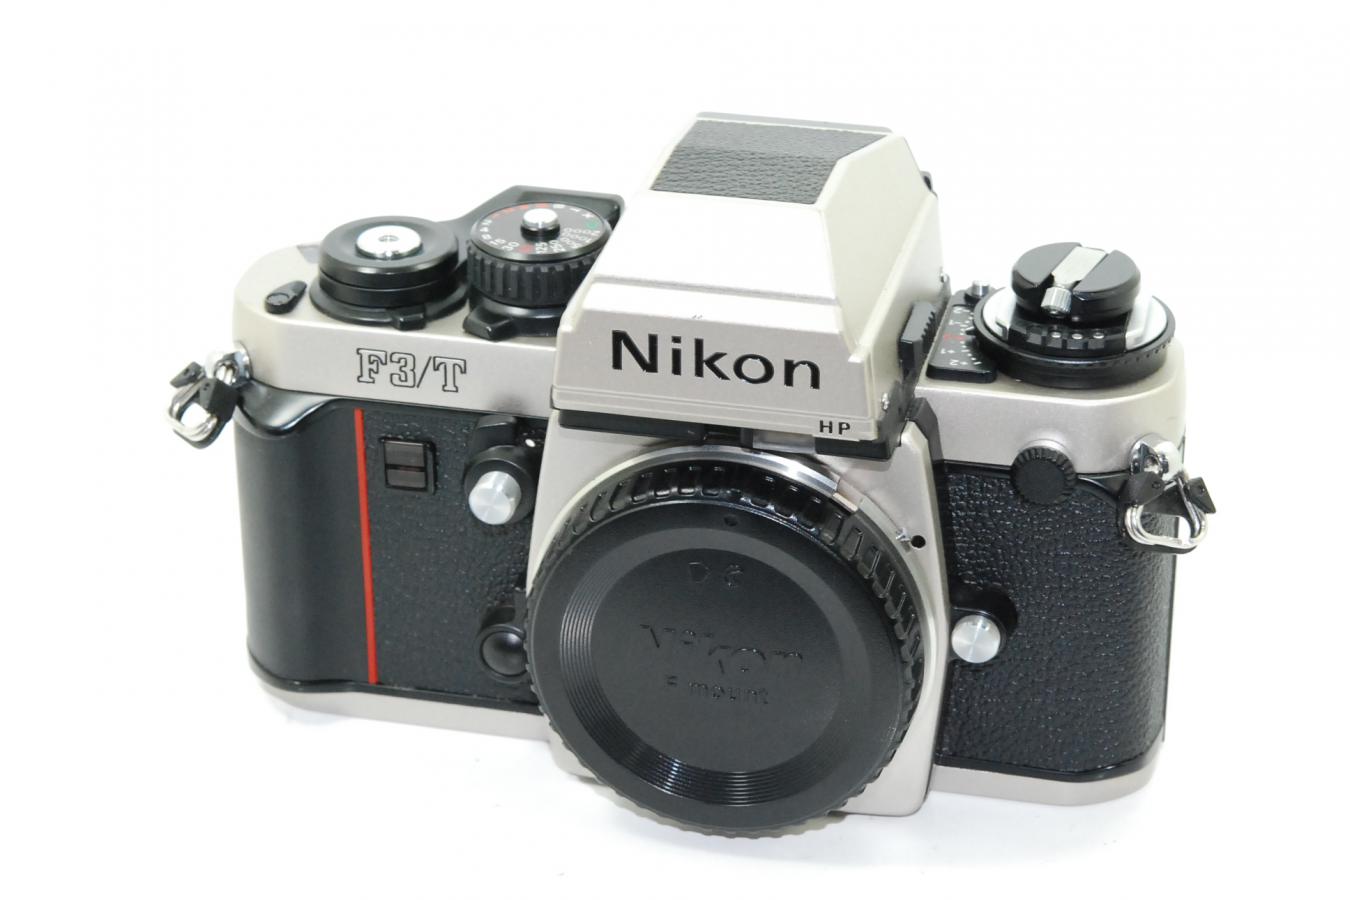 ニコン Nikon F3/T チタンカラー【モルト交換済】 カメラのヤマゲン